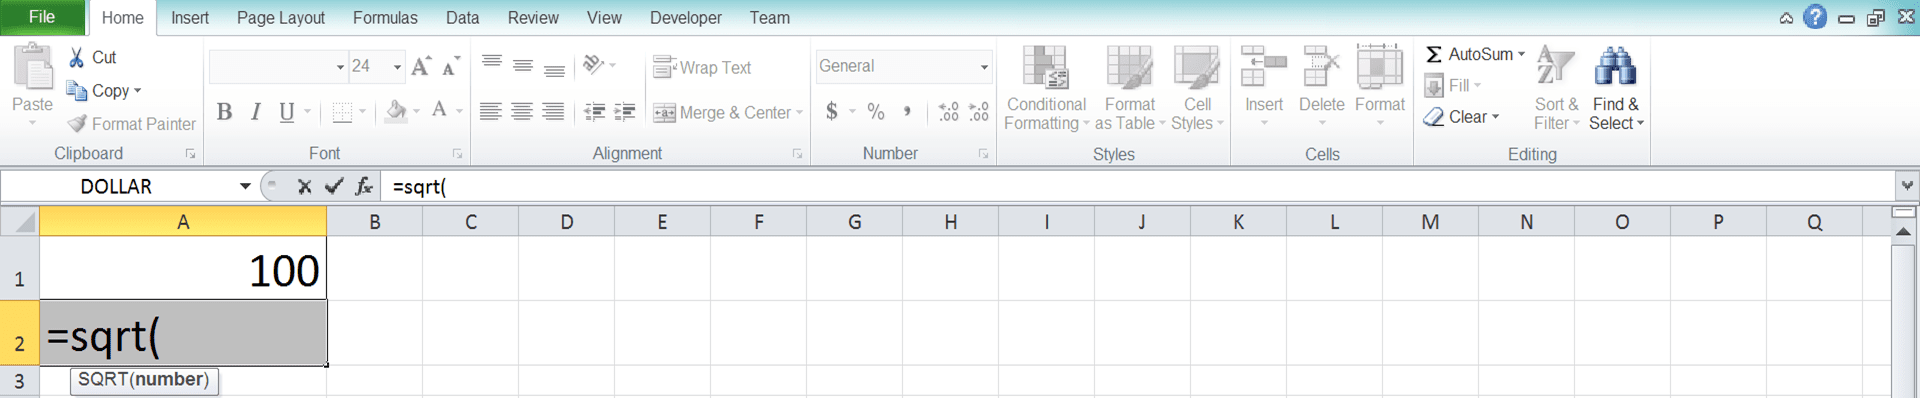 Cara Menghitung Akar di Excel Beserta Berbagai Rumus dan Fungsinya - Screenshot Langkah 3-2